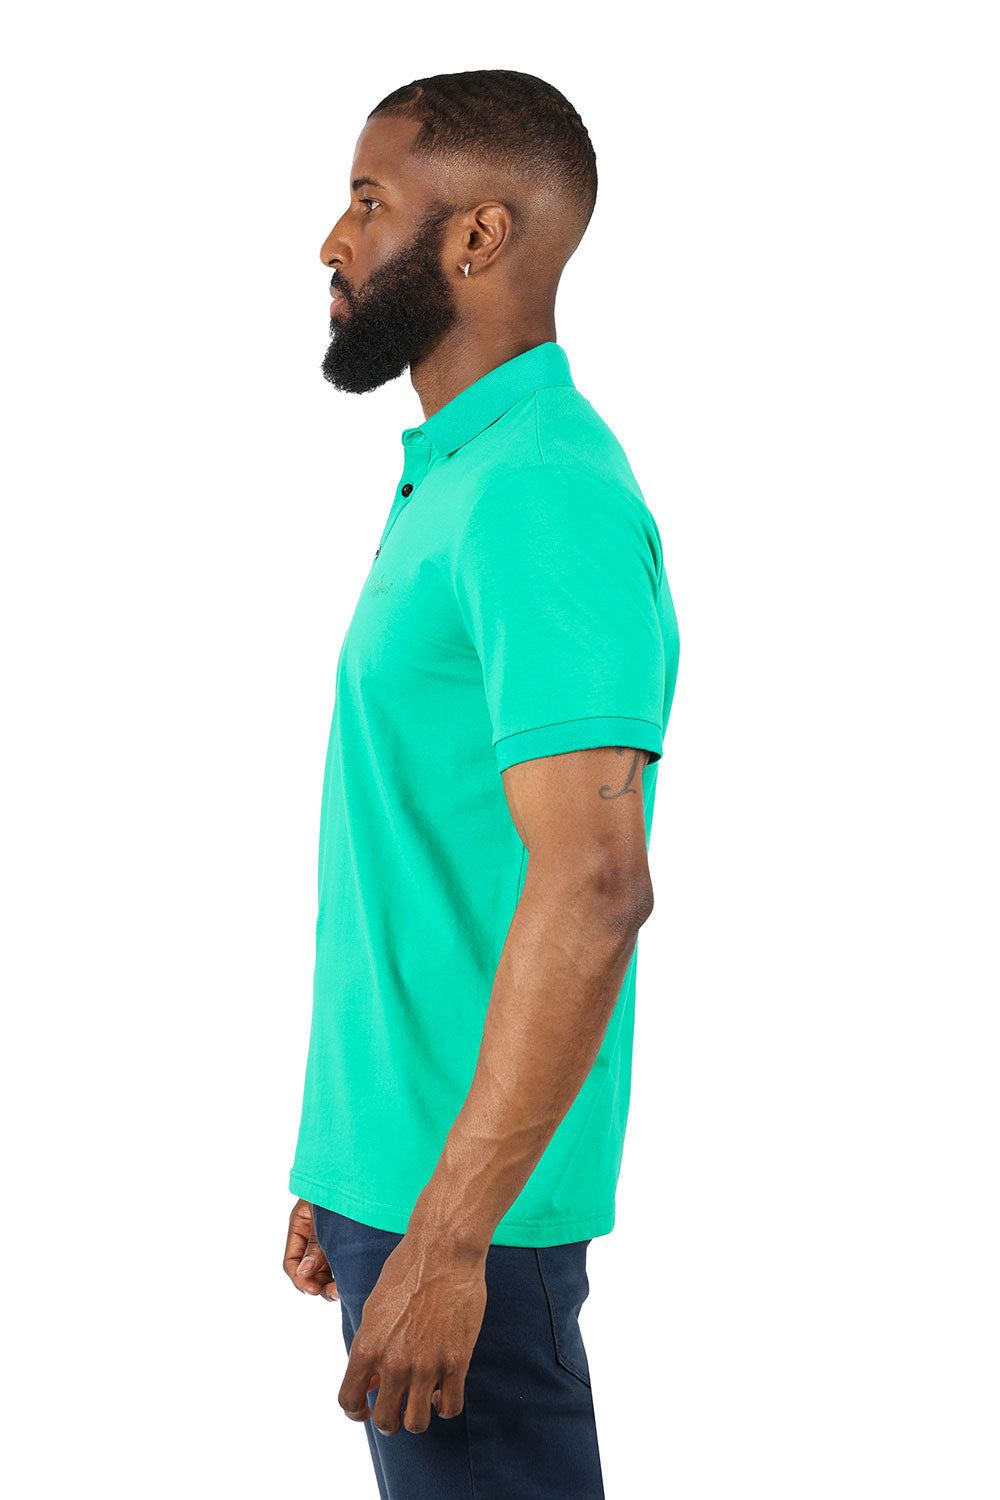 Barabas Wholesale men's Solid Color Premium Polo Shirts 3PP833